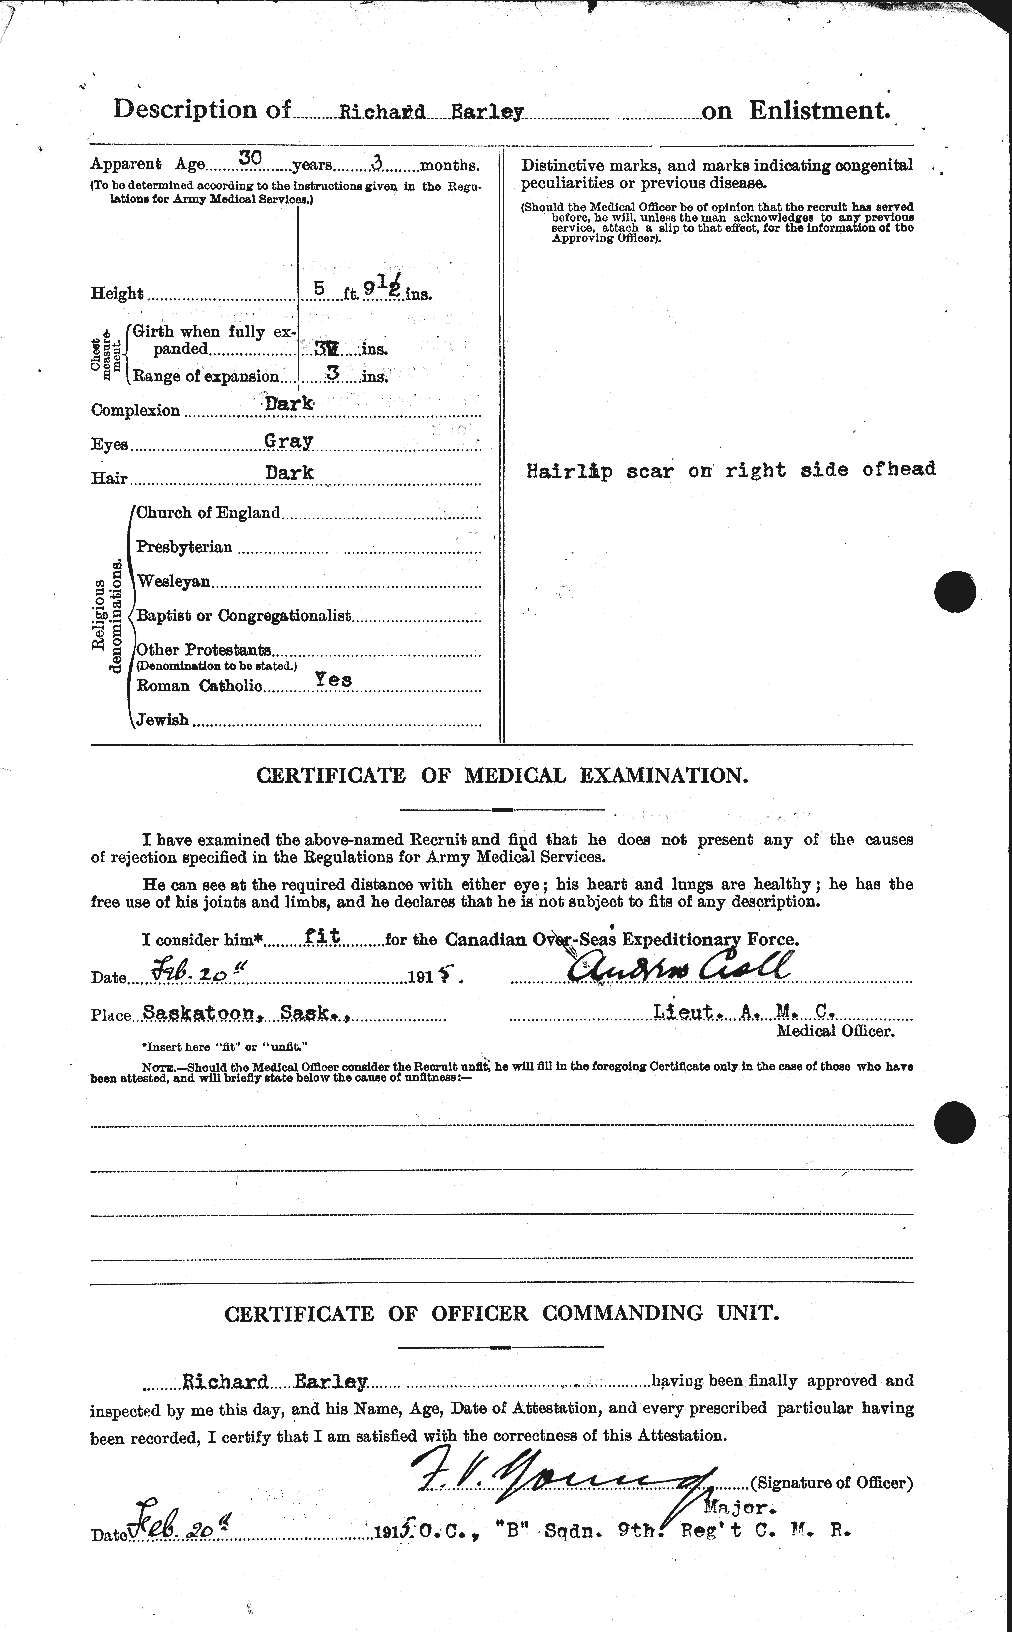 Dossiers du Personnel de la Première Guerre mondiale - CEC 307126b